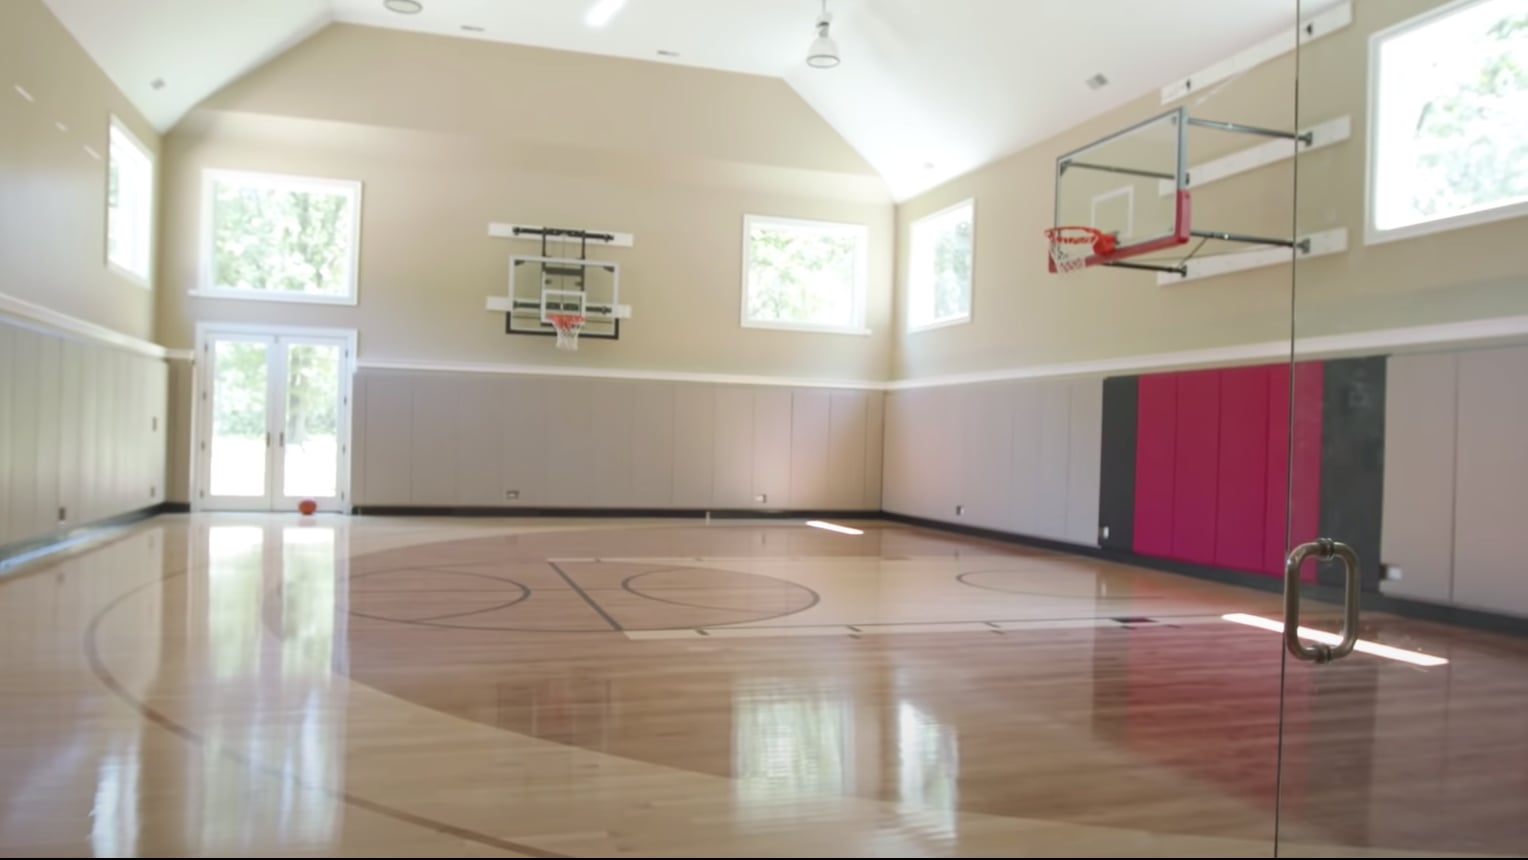 Inside Scottie Pippen's Chicago Mansion With An Indoor Court, Open Door